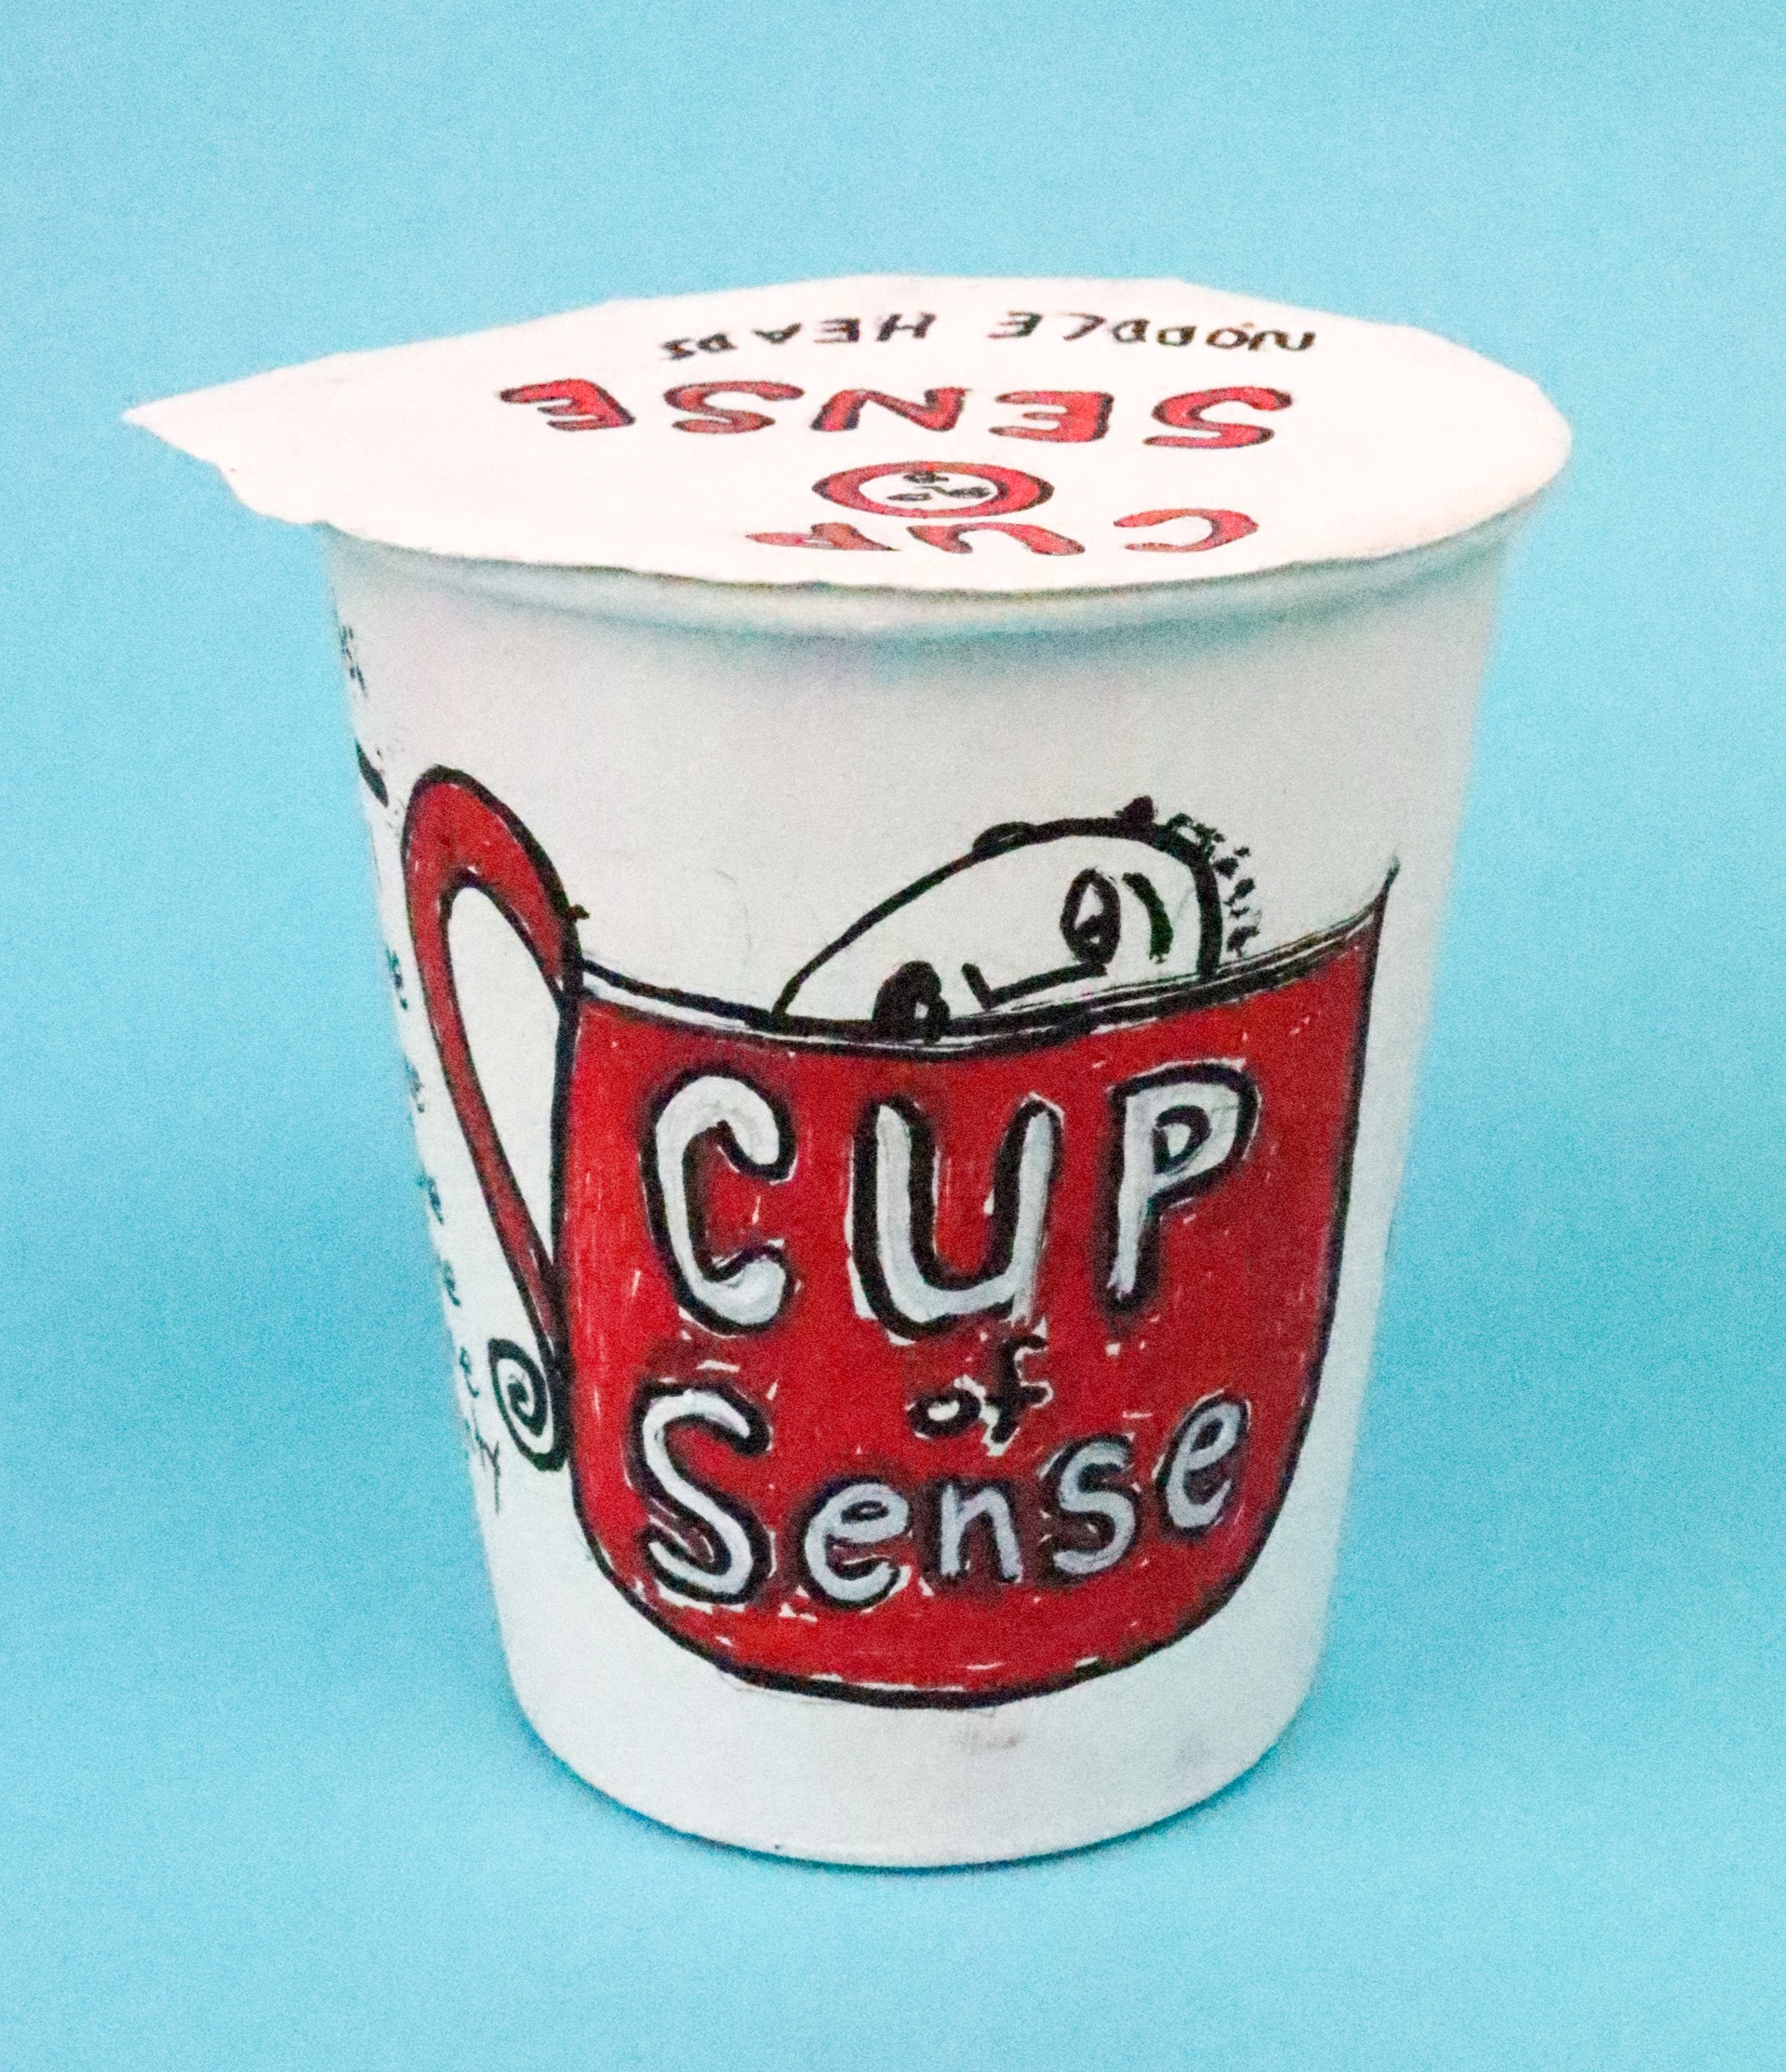 Cup of Sense by Toni Lane